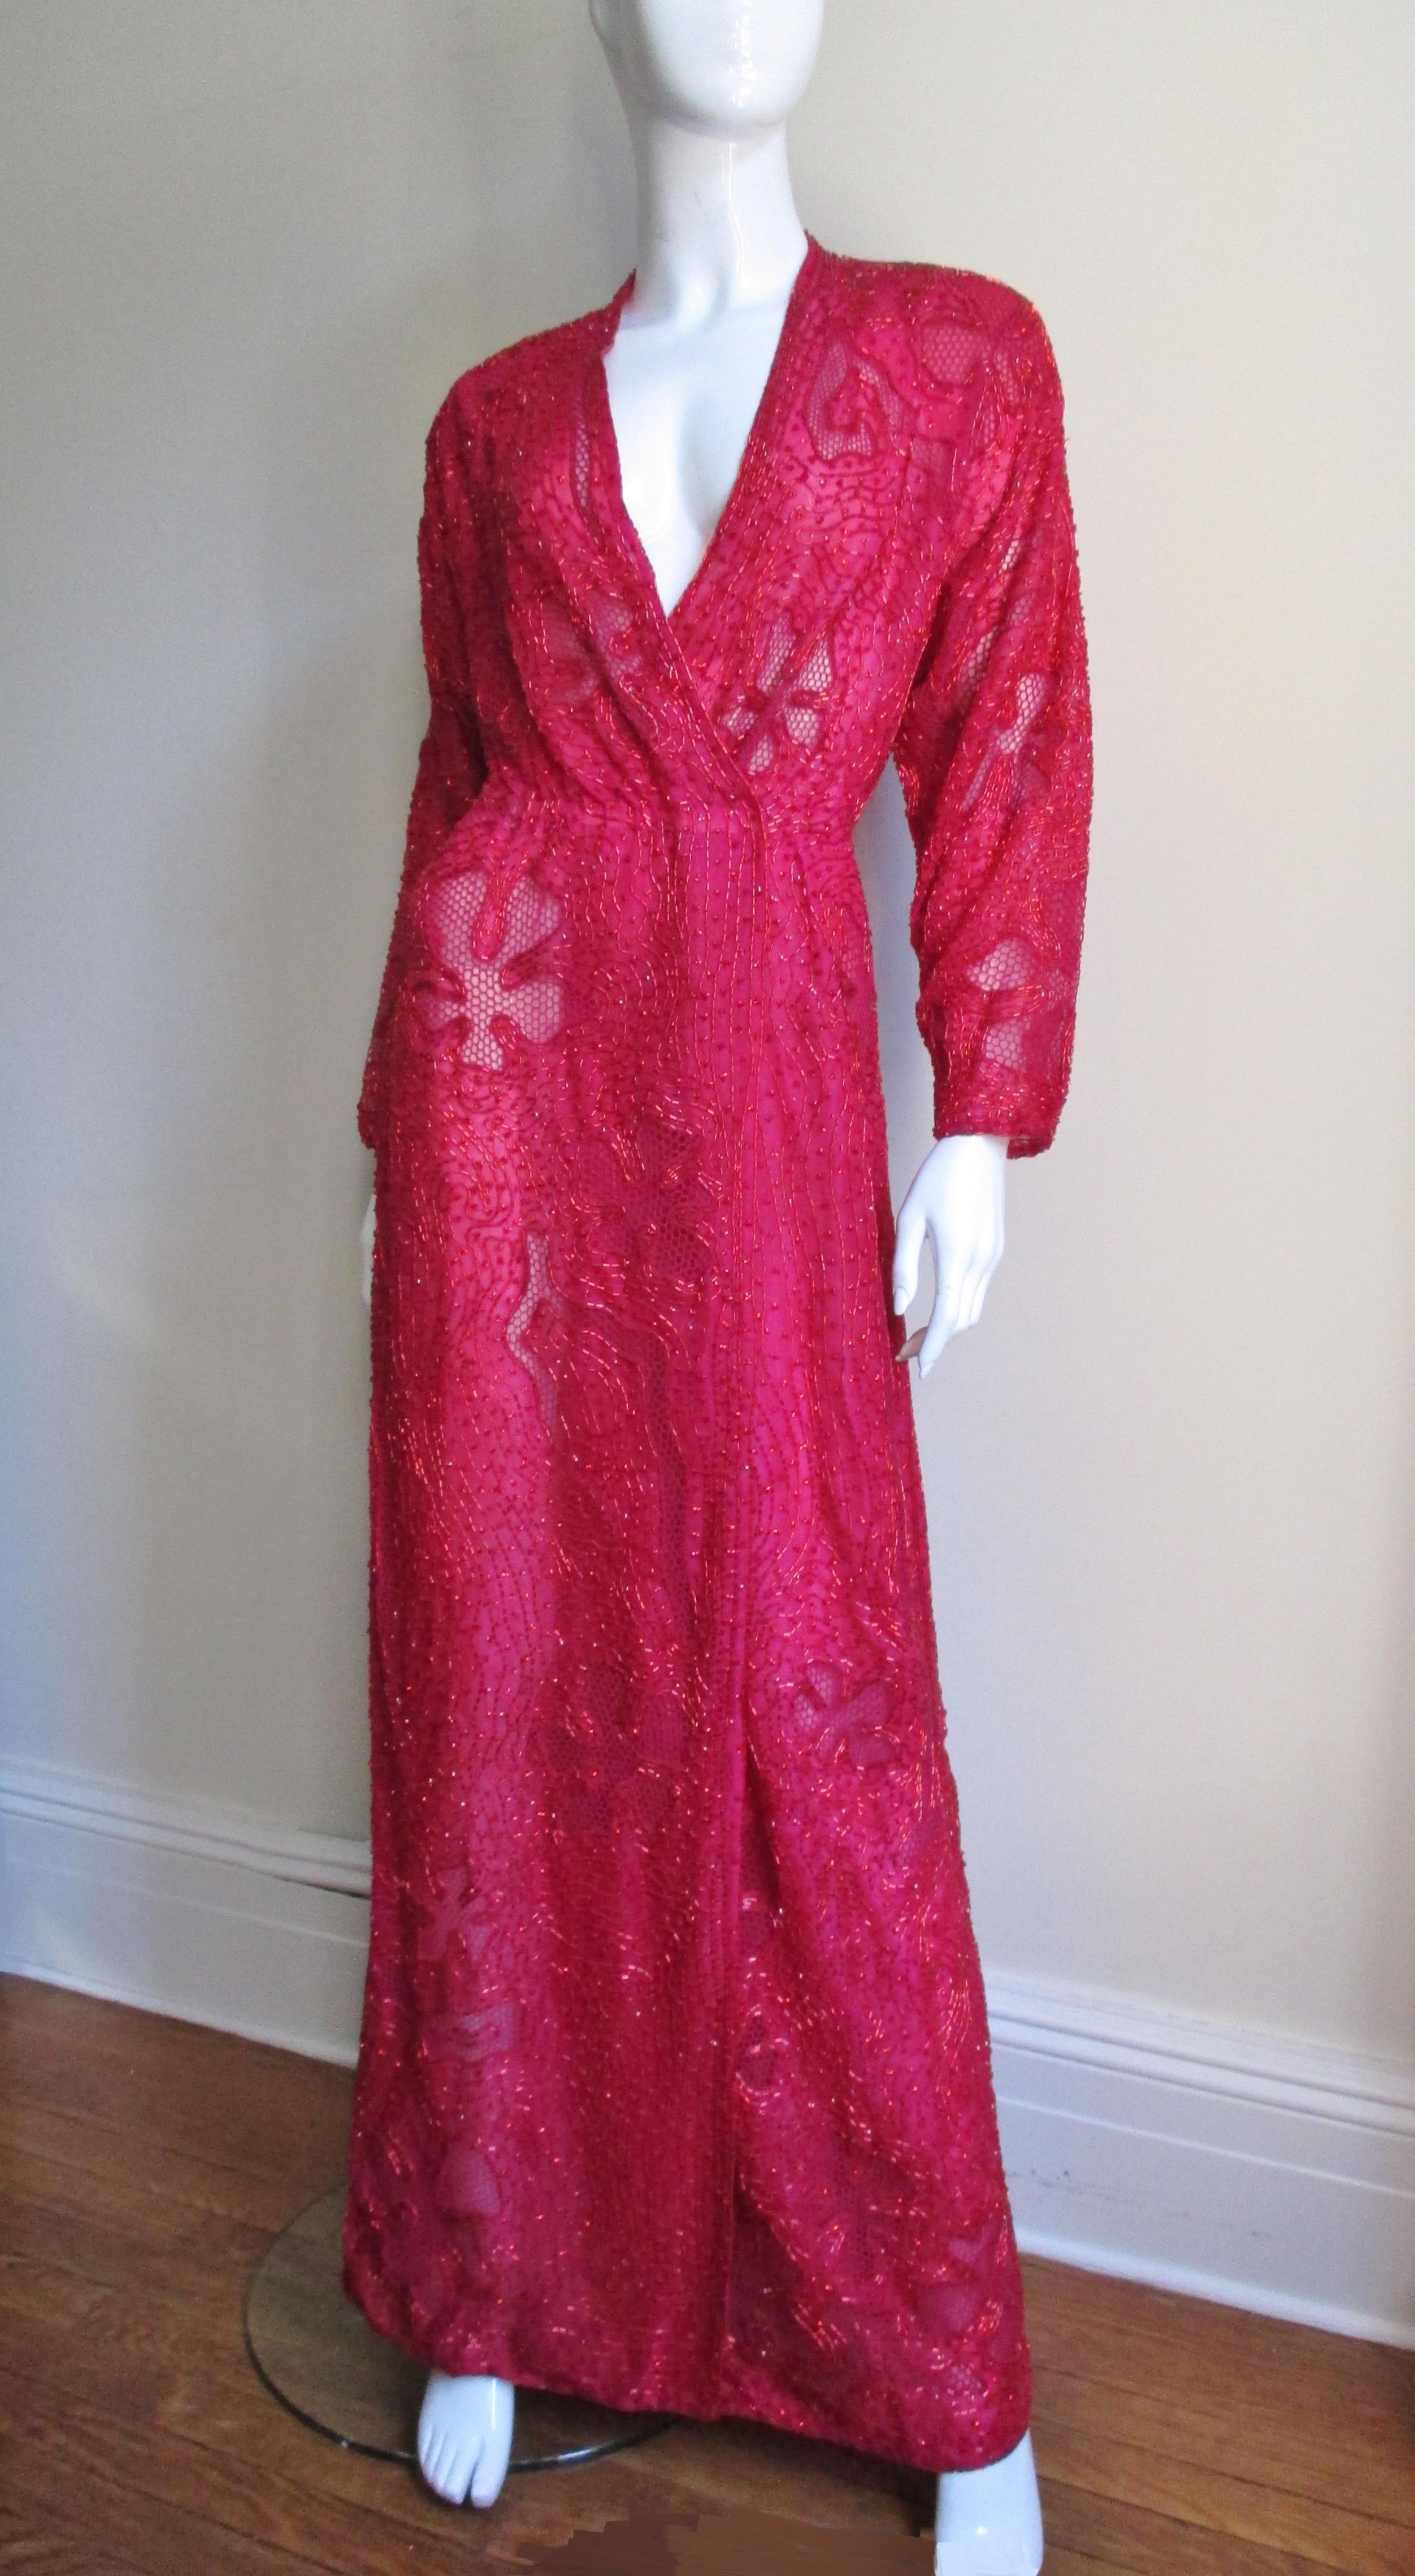 Ein unglaublich detailreiches, elegantes, rotes Seiden-Perlen-Wickelkleid von Halston. Das bodenlange Kleid ist mit roten röhrenförmigen Glasperlen in einem komplizierten Muster aus abstrakten Formen bedeckt, die mit roten netzbedeckten Formen